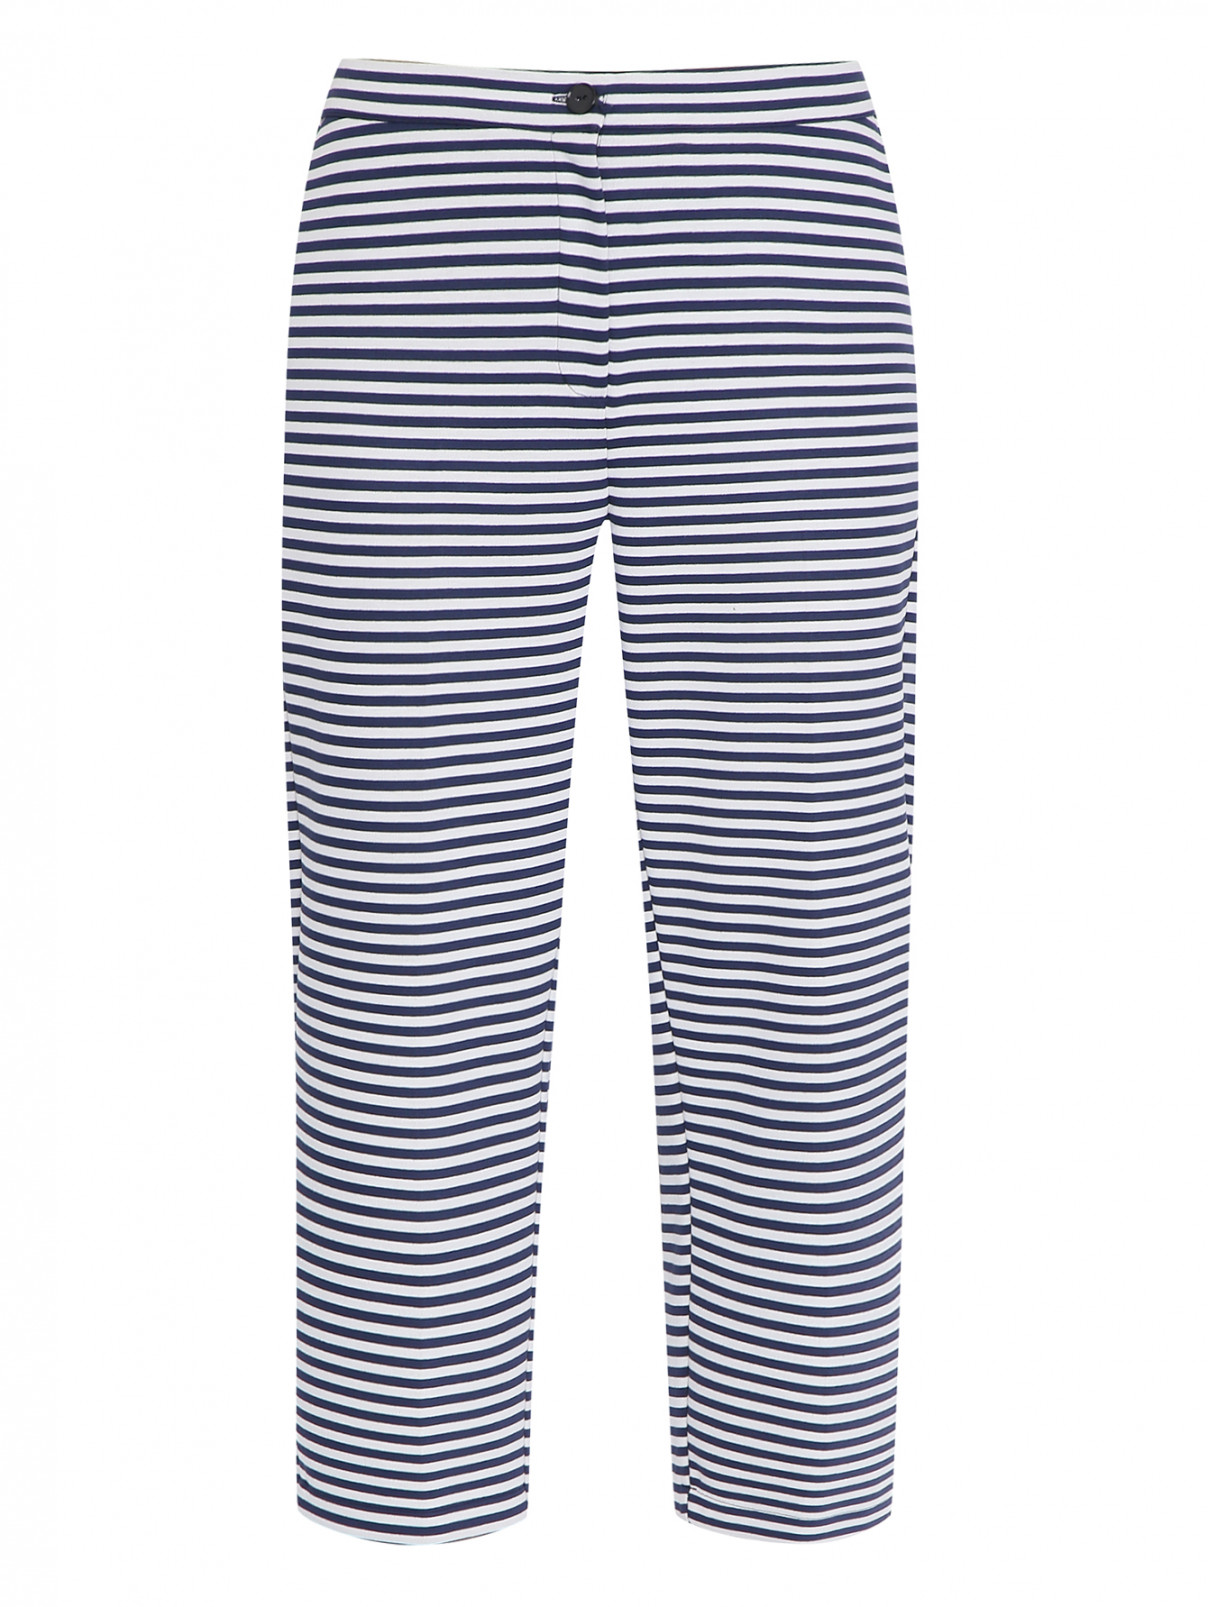 Трикотажные брюки с узором полоска Persona by Marina Rinaldi  –  Общий вид  – Цвет:  Узор